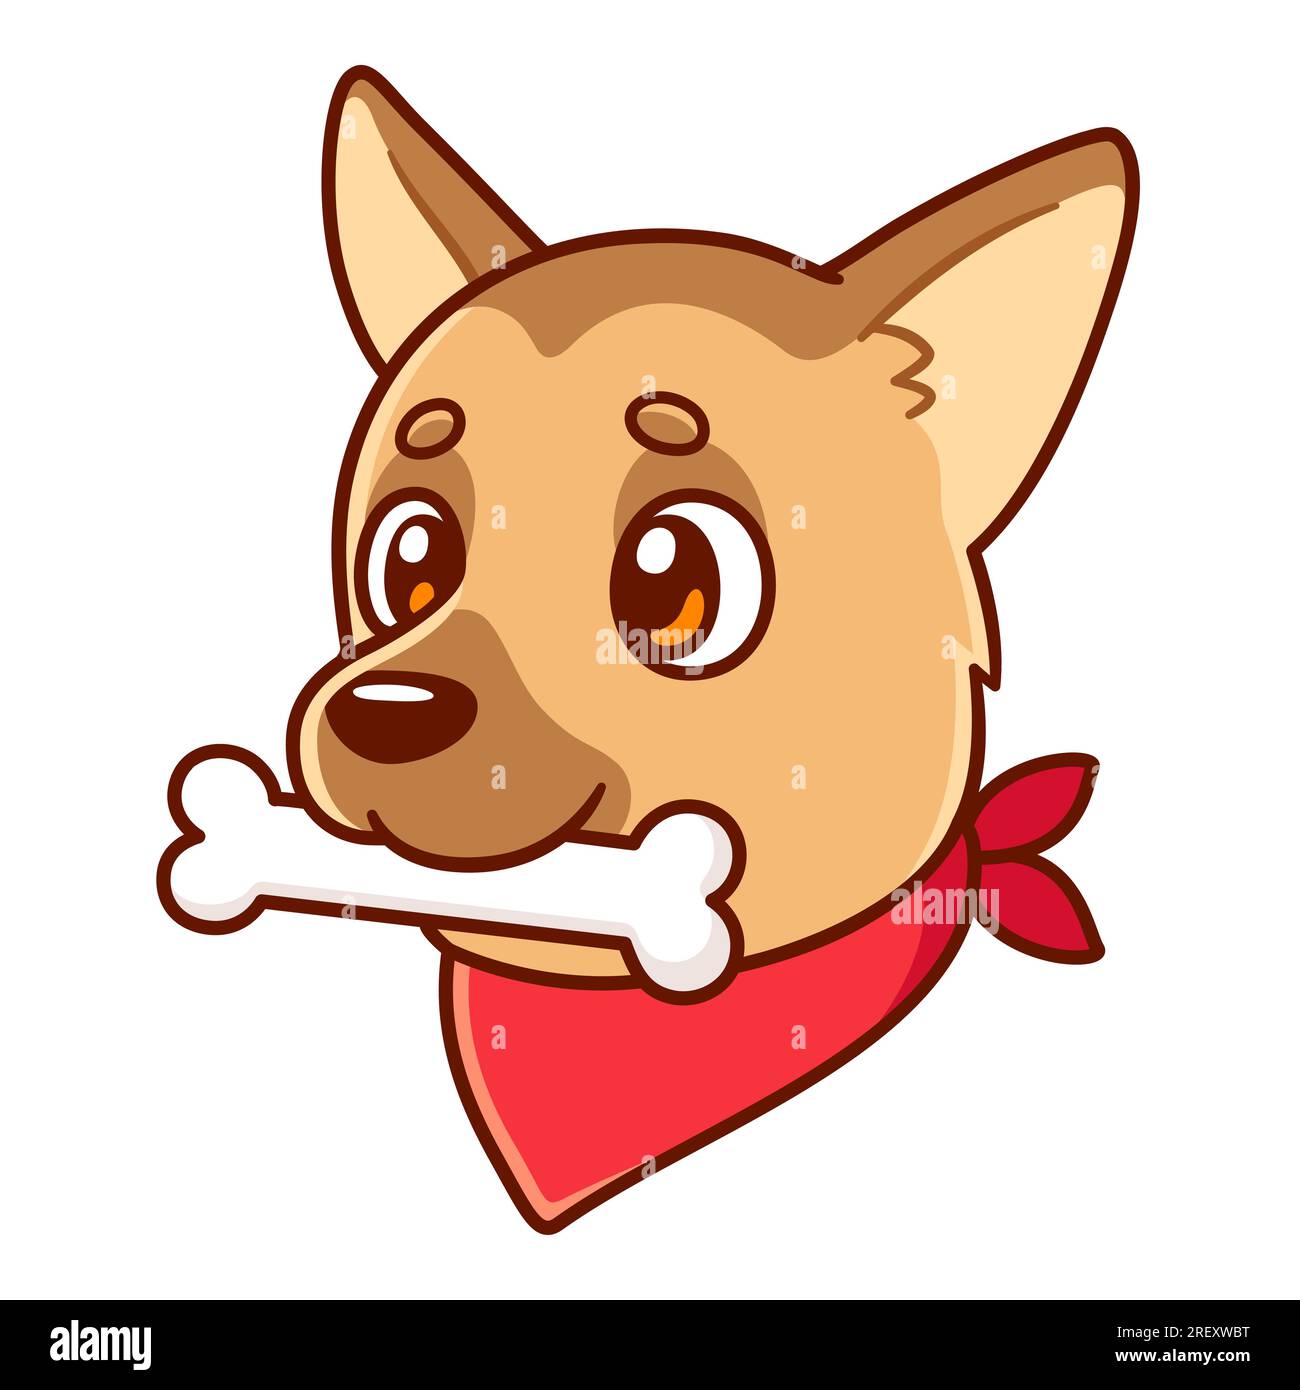 Divertente disegno di cane da cartoni animati con osso e bandana rossa. Carina illustrazione vettoriale del pastore tedesco. Illustrazione Vettoriale